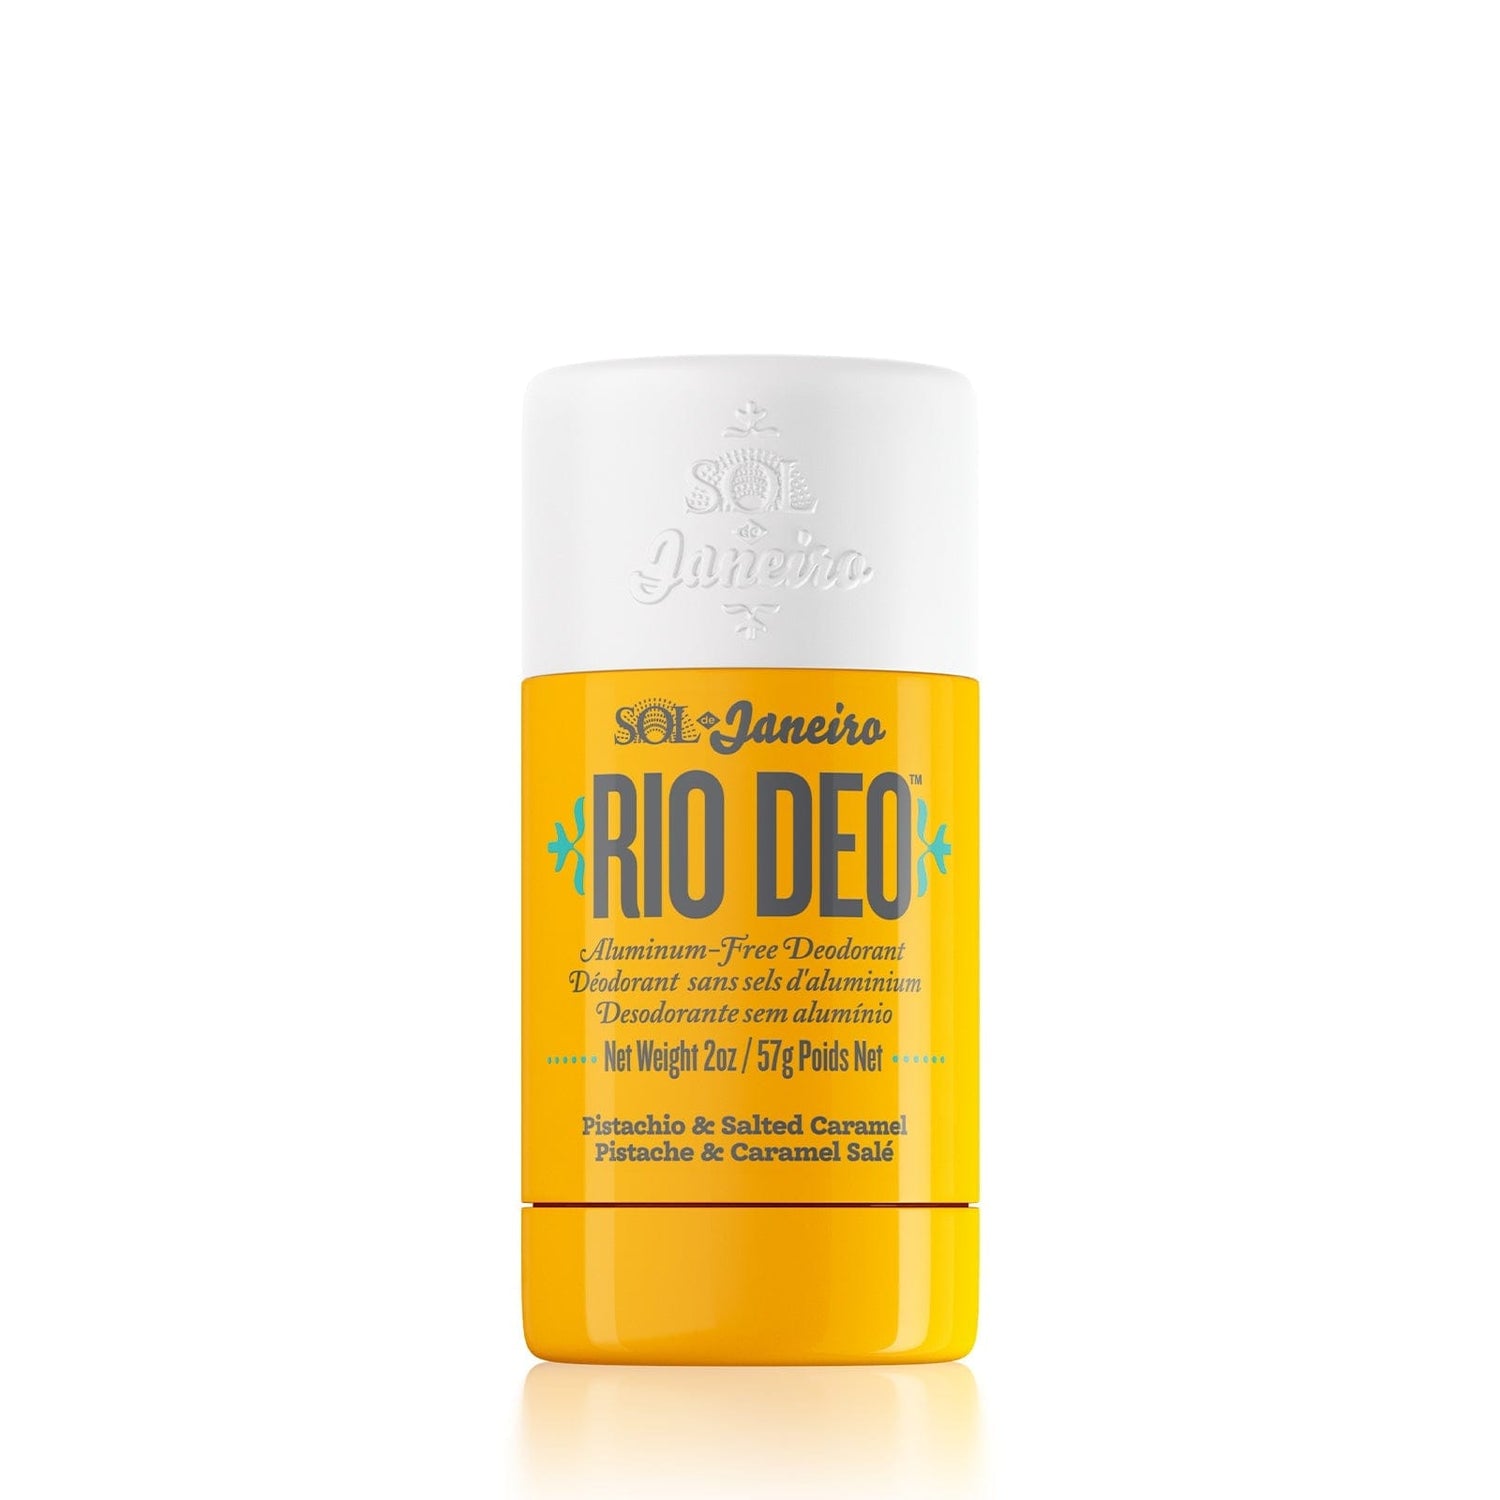 Rio Deo Aluminum-Free Deodorant Cheirosa - Sol de Janeiro